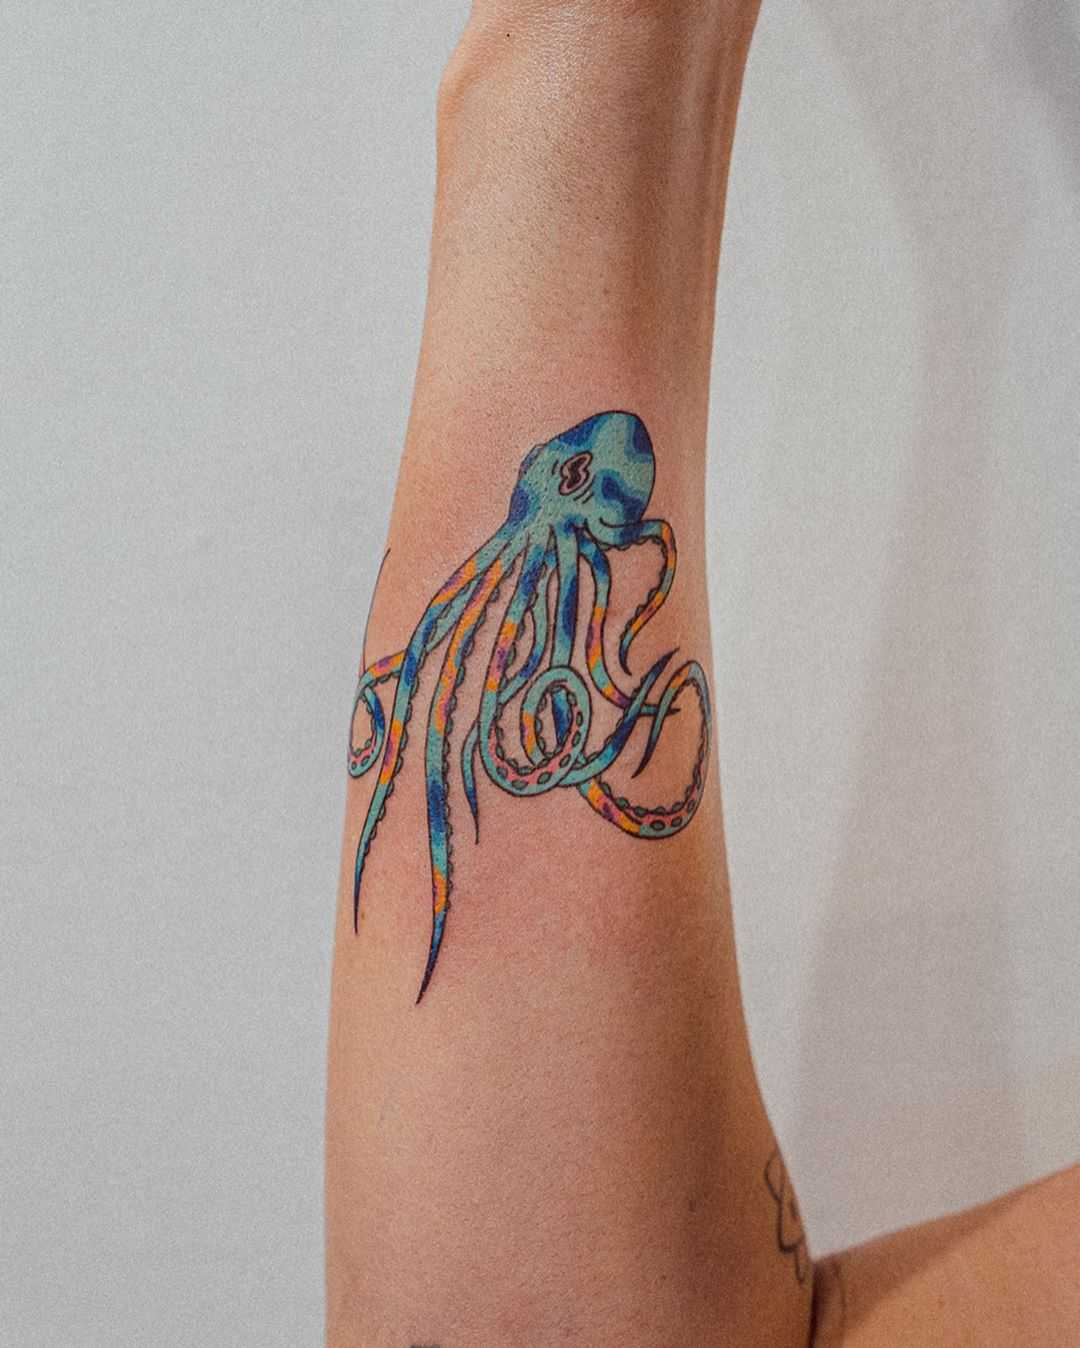 Watercolor octopus by tattooist Bongkee